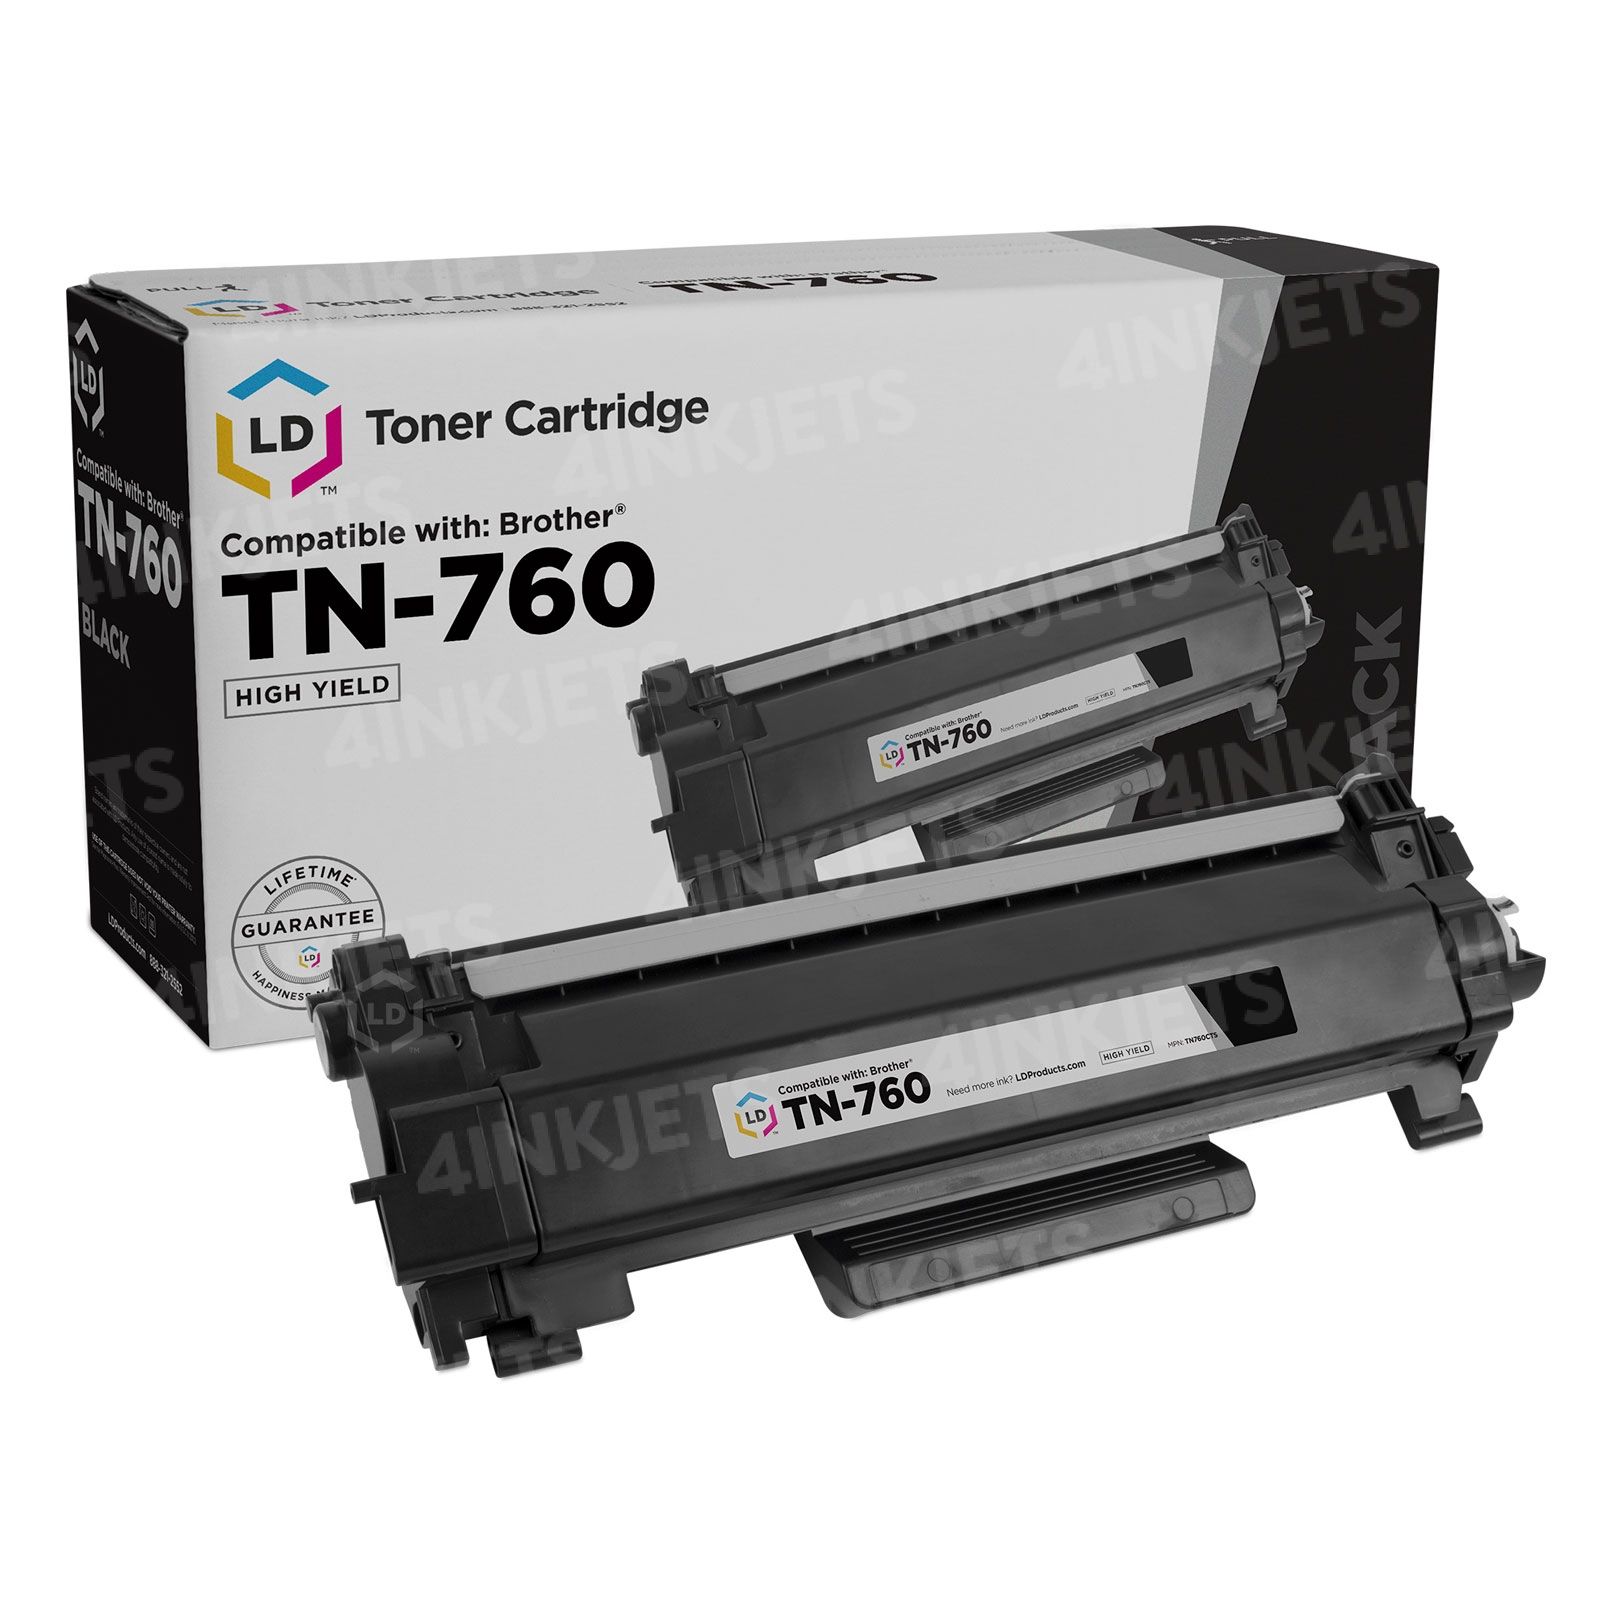 TN760 High-Yield Black Toner Cartridge Twin Pack, TN760 2PK, Replacement  for Brother TN-760 TN-730 Toner for HL-L2350DW L2395DW L2390DW L2370DW